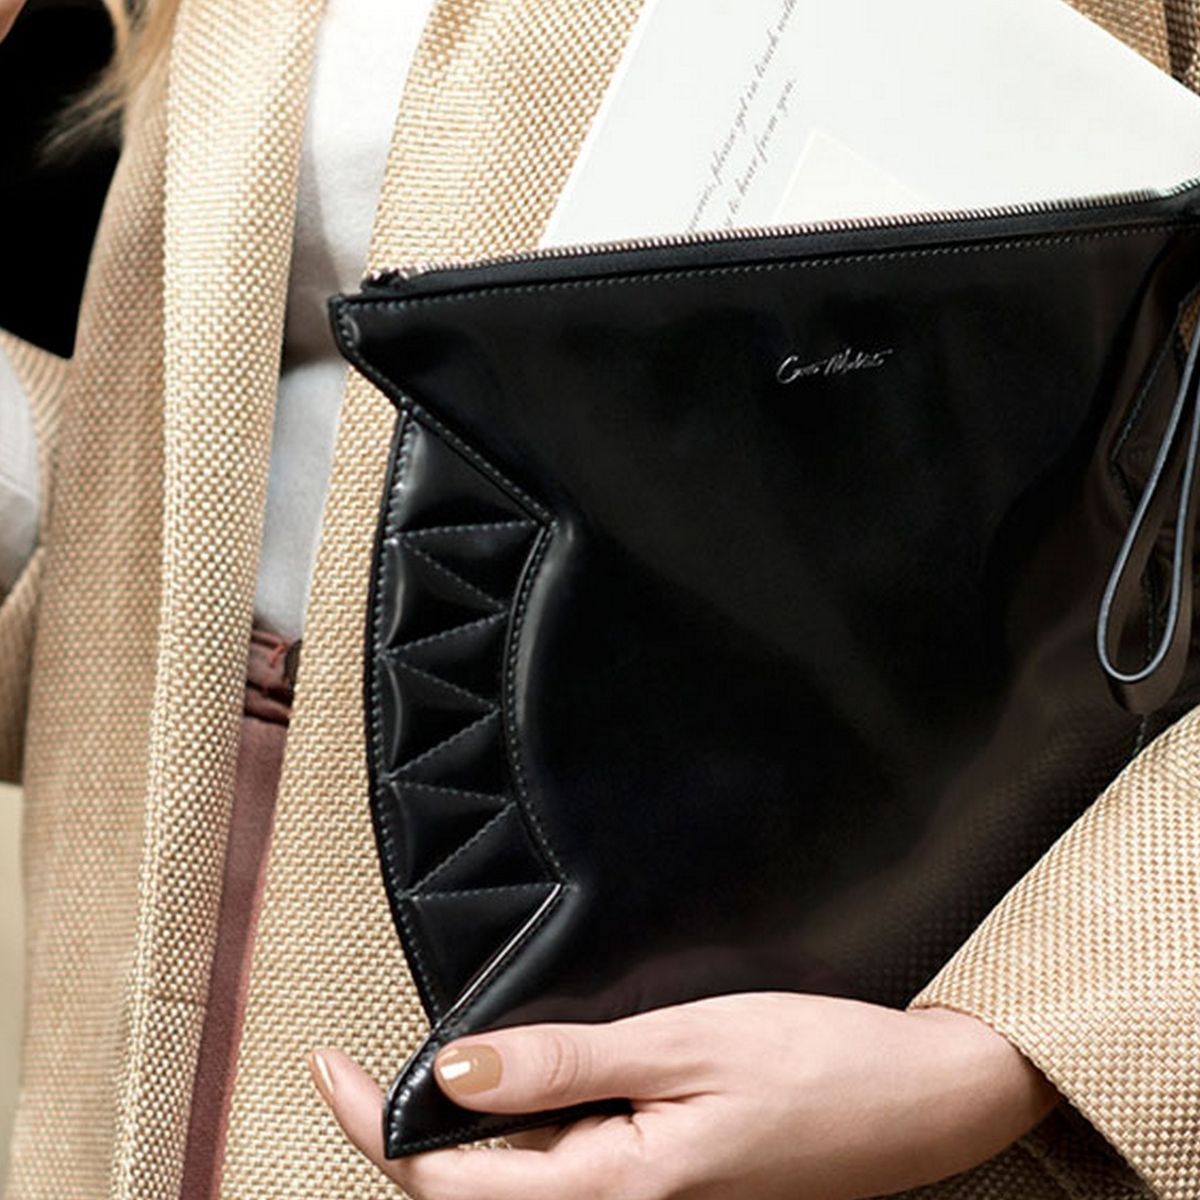 Las 'celebrities' coinciden: Louis Vuitton tiene el bolso perfecto